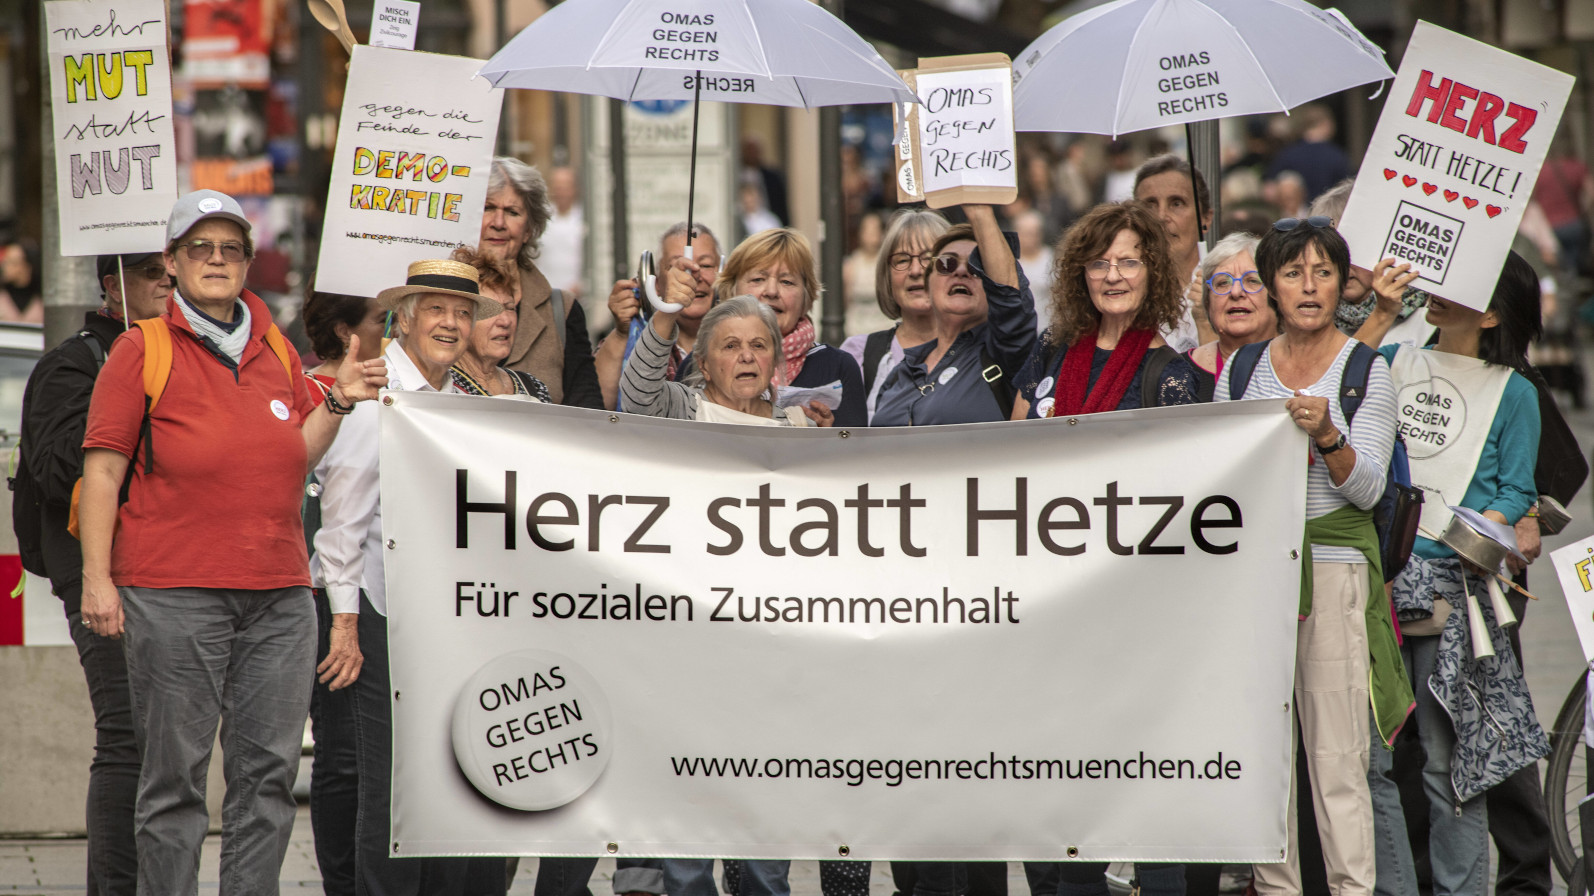 Die Omas gegen Rechts bei einer Demonstration unter dem Motto "Herz statt Hetze" am 28. Oktober 2022 in München.